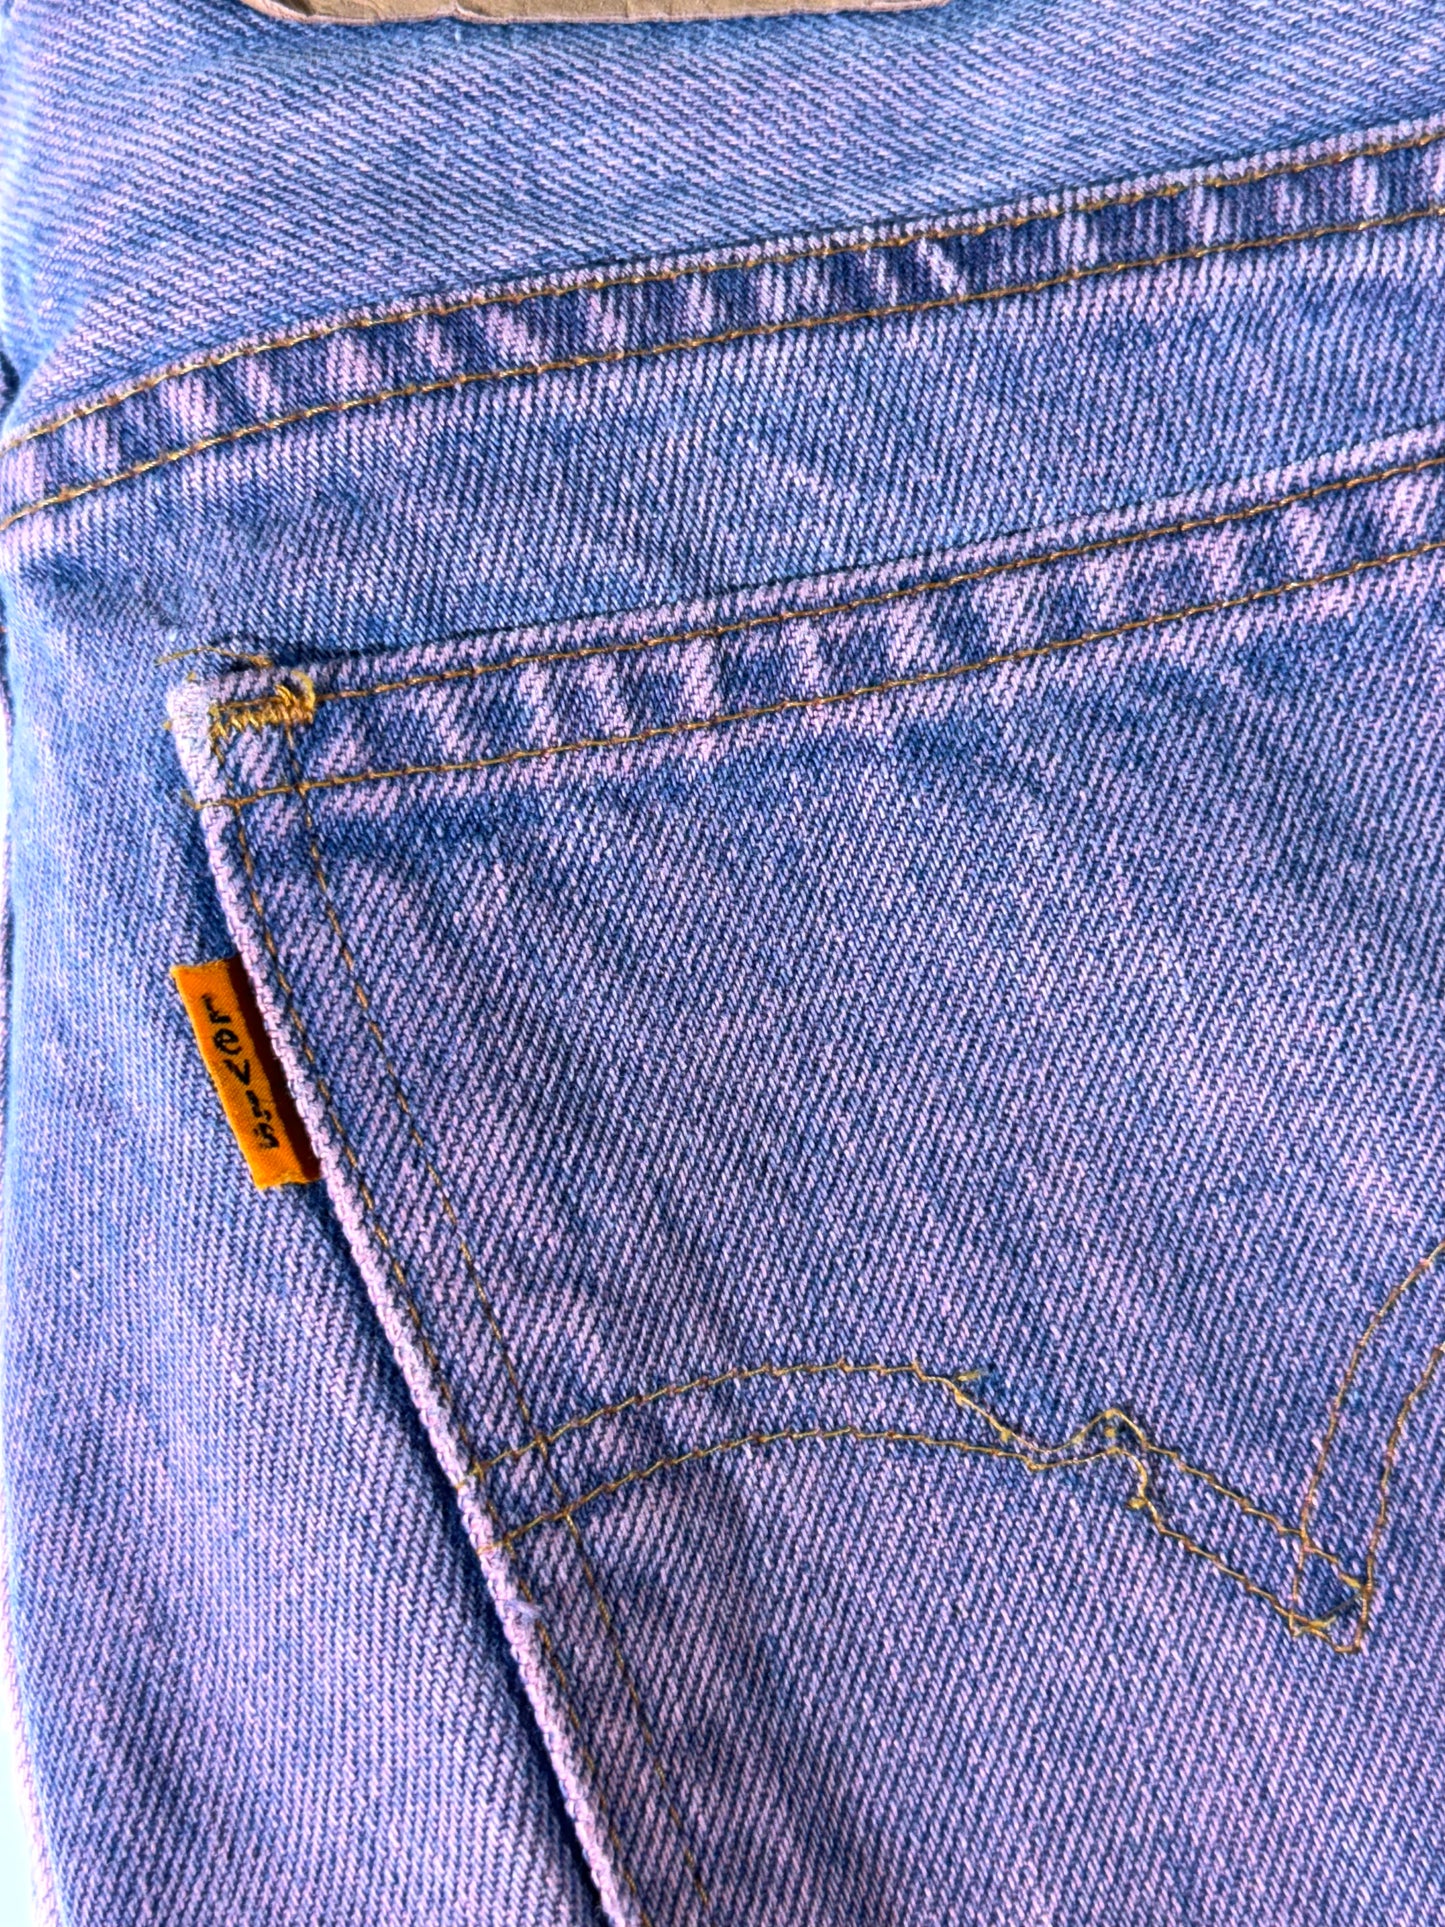 Vintage Levis Jeans Purple Dyed Orange Tab UK Made